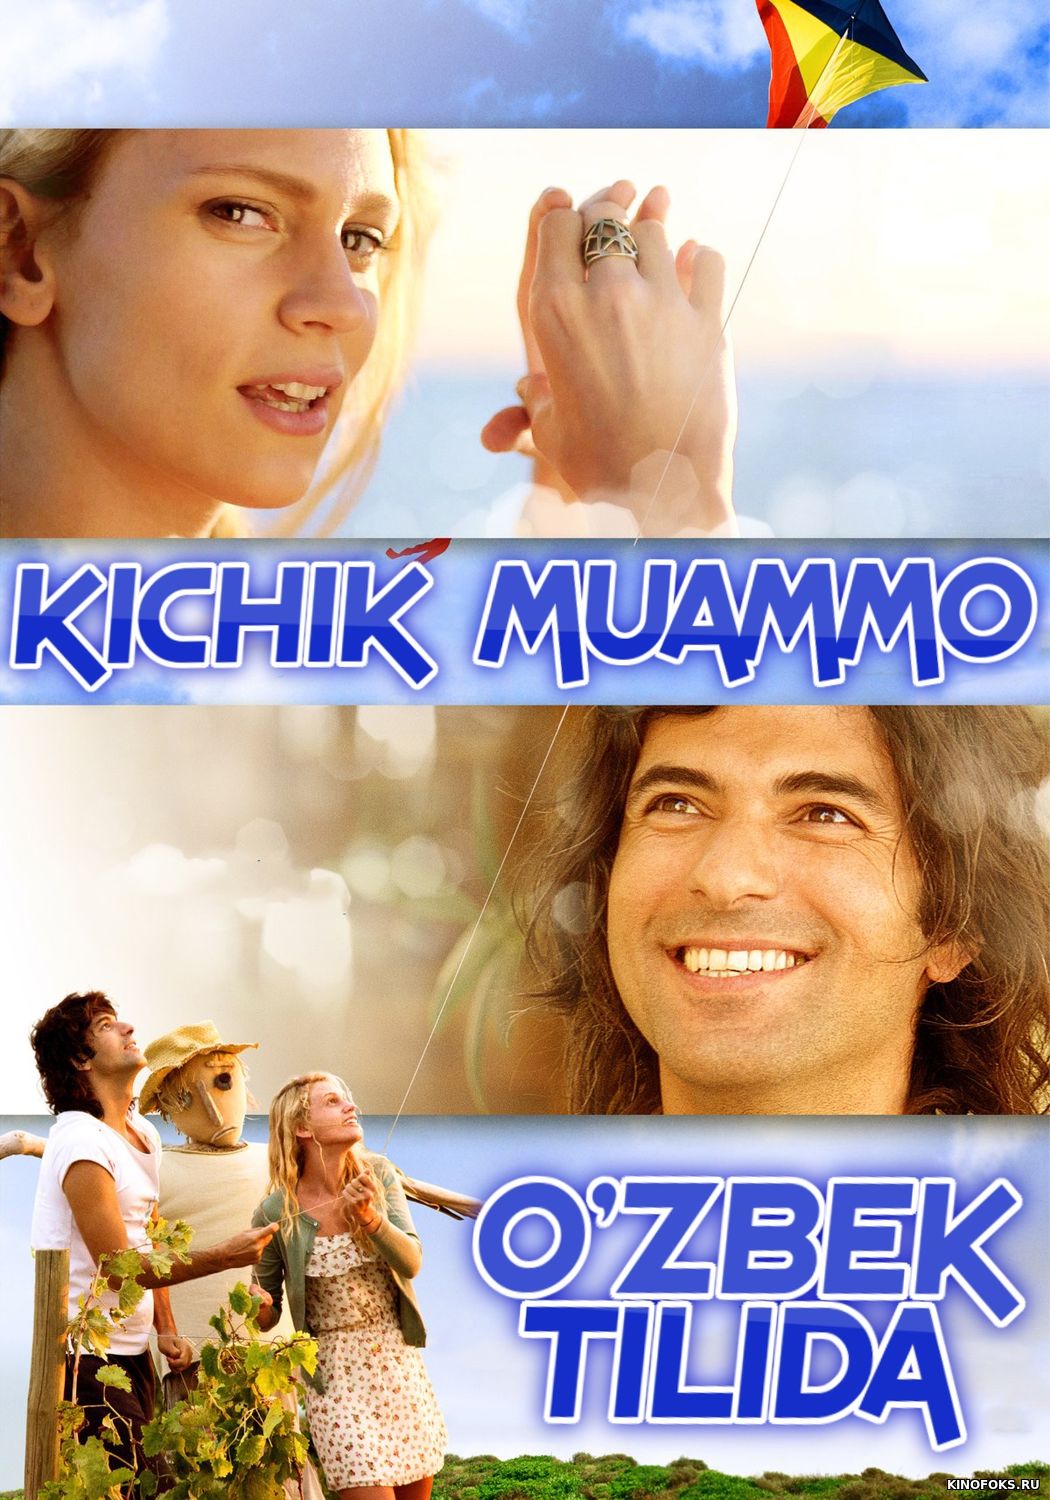 Kichik muammo / Kichkina muammo Uzbek tilida 2020 O'zbek tarjima kino HD